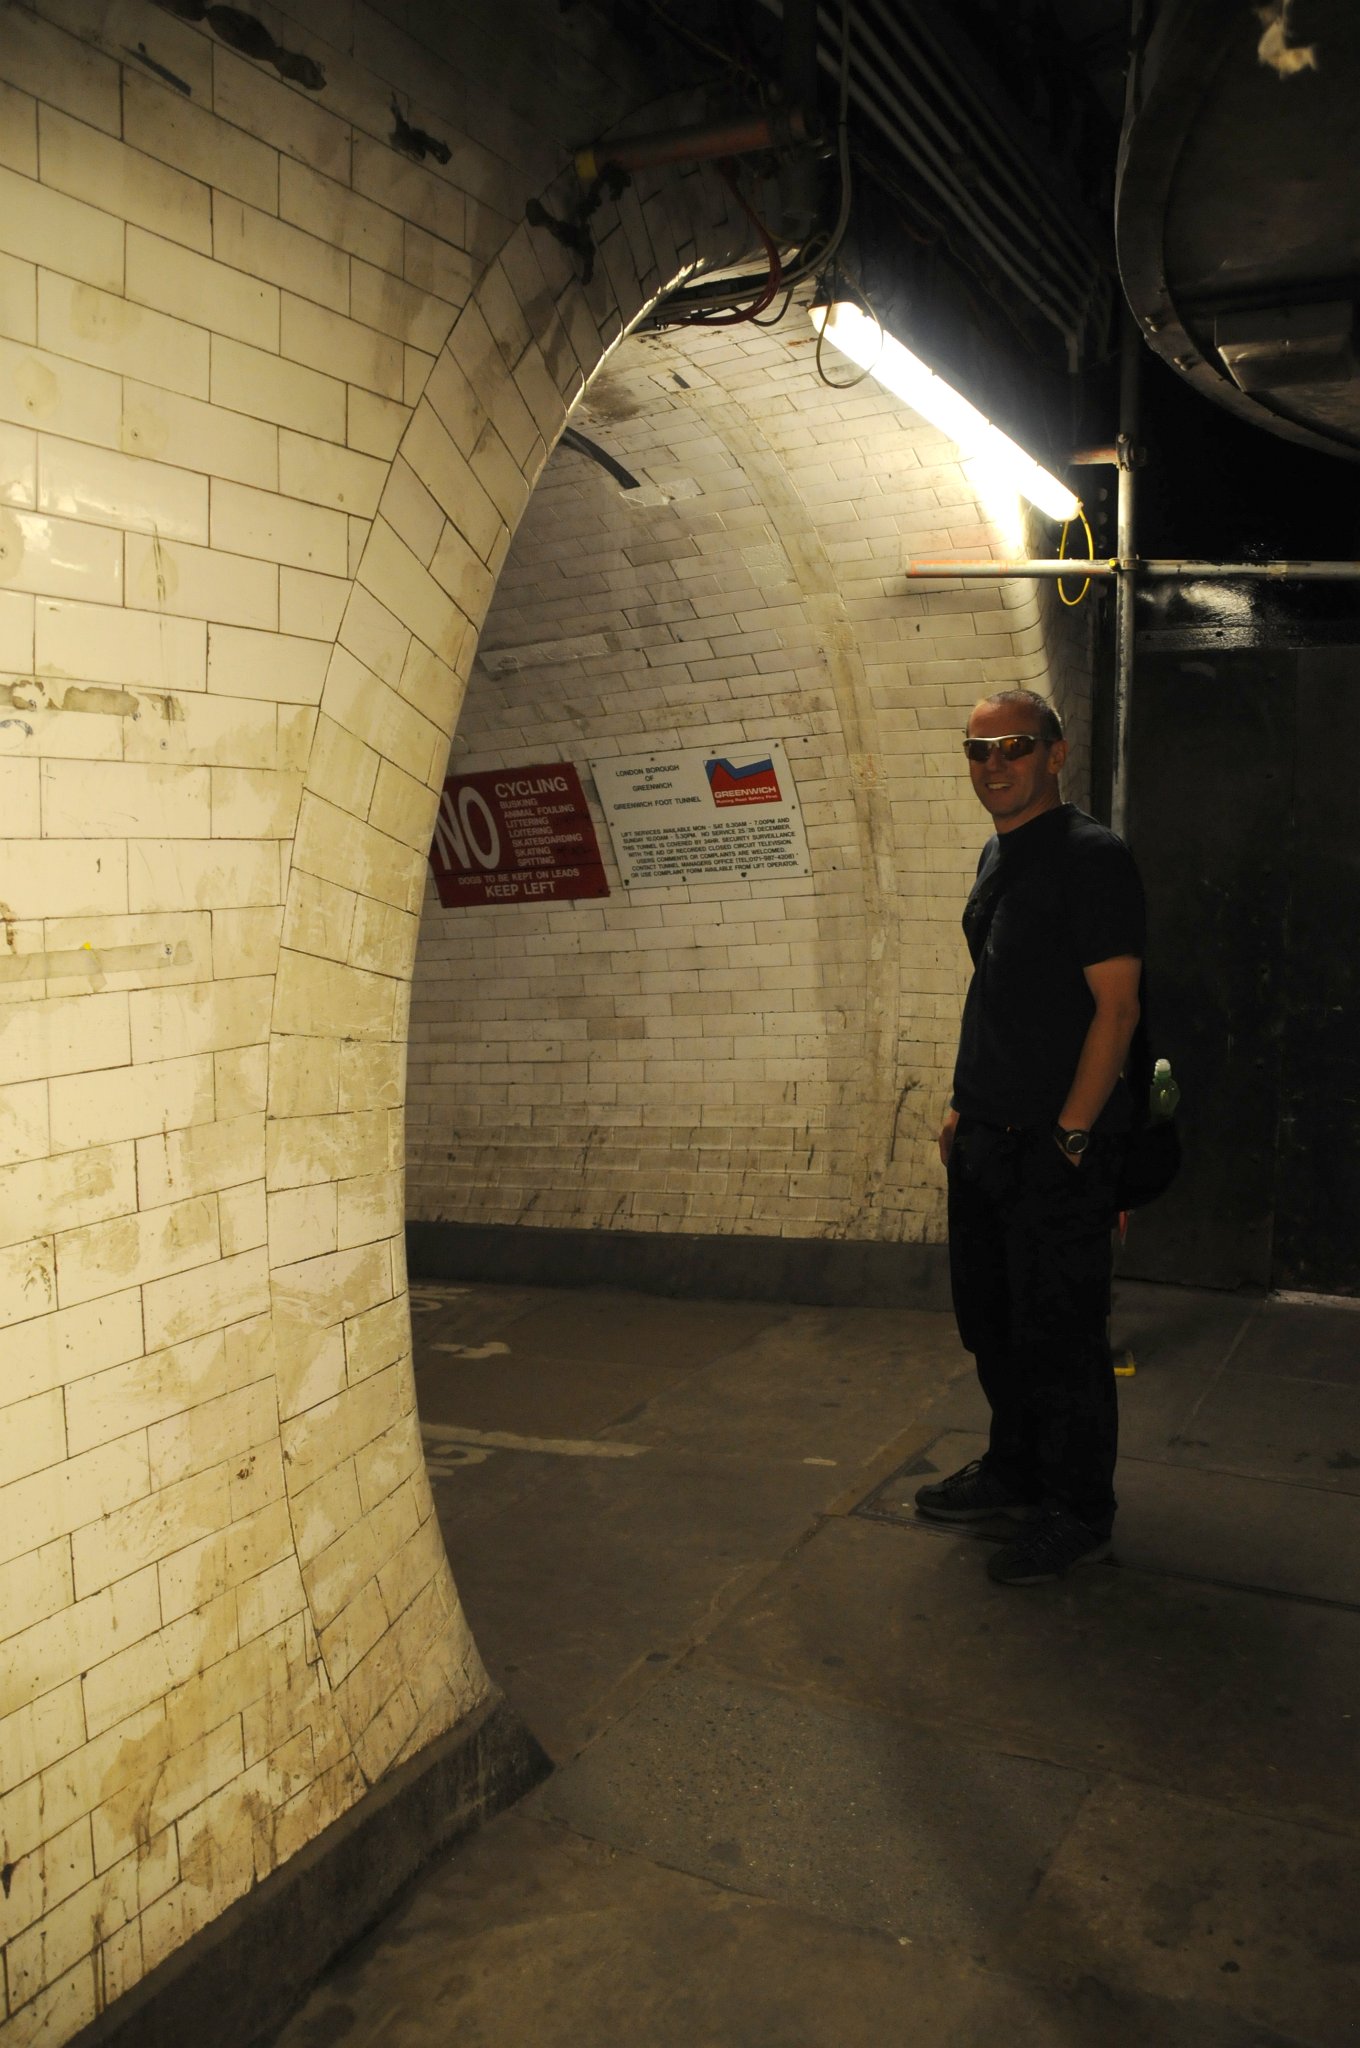 DSC_4303_1.jpg - Tunel nahradil drahou a někdy nespolehlivou trajektovou dopravu a měl umožnit pracovníkům, kteří žili na jižní straně řeky Temže, aby dosáhli svých pracovišť v londýnských docích a loděnicích za krátký čas.